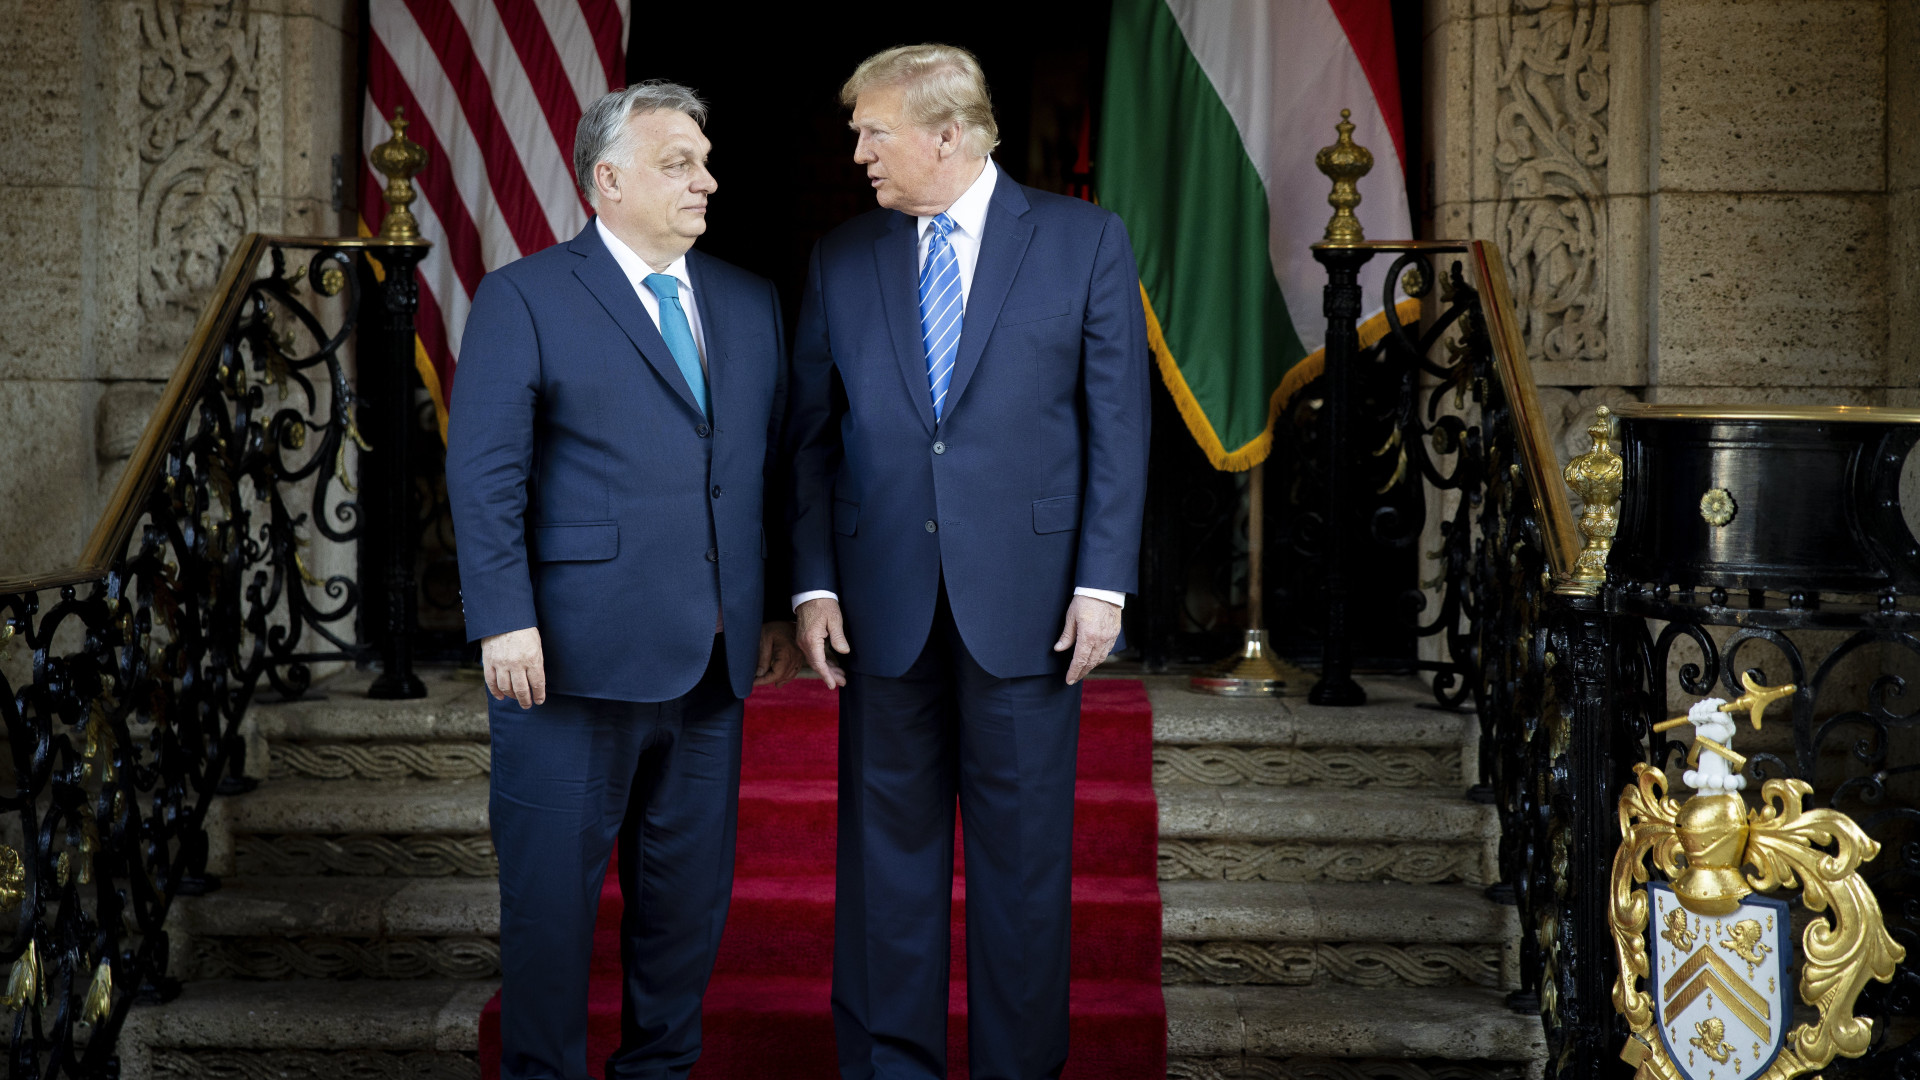 Orban il nemico della democrazia sceglie Trump il golpista mancato